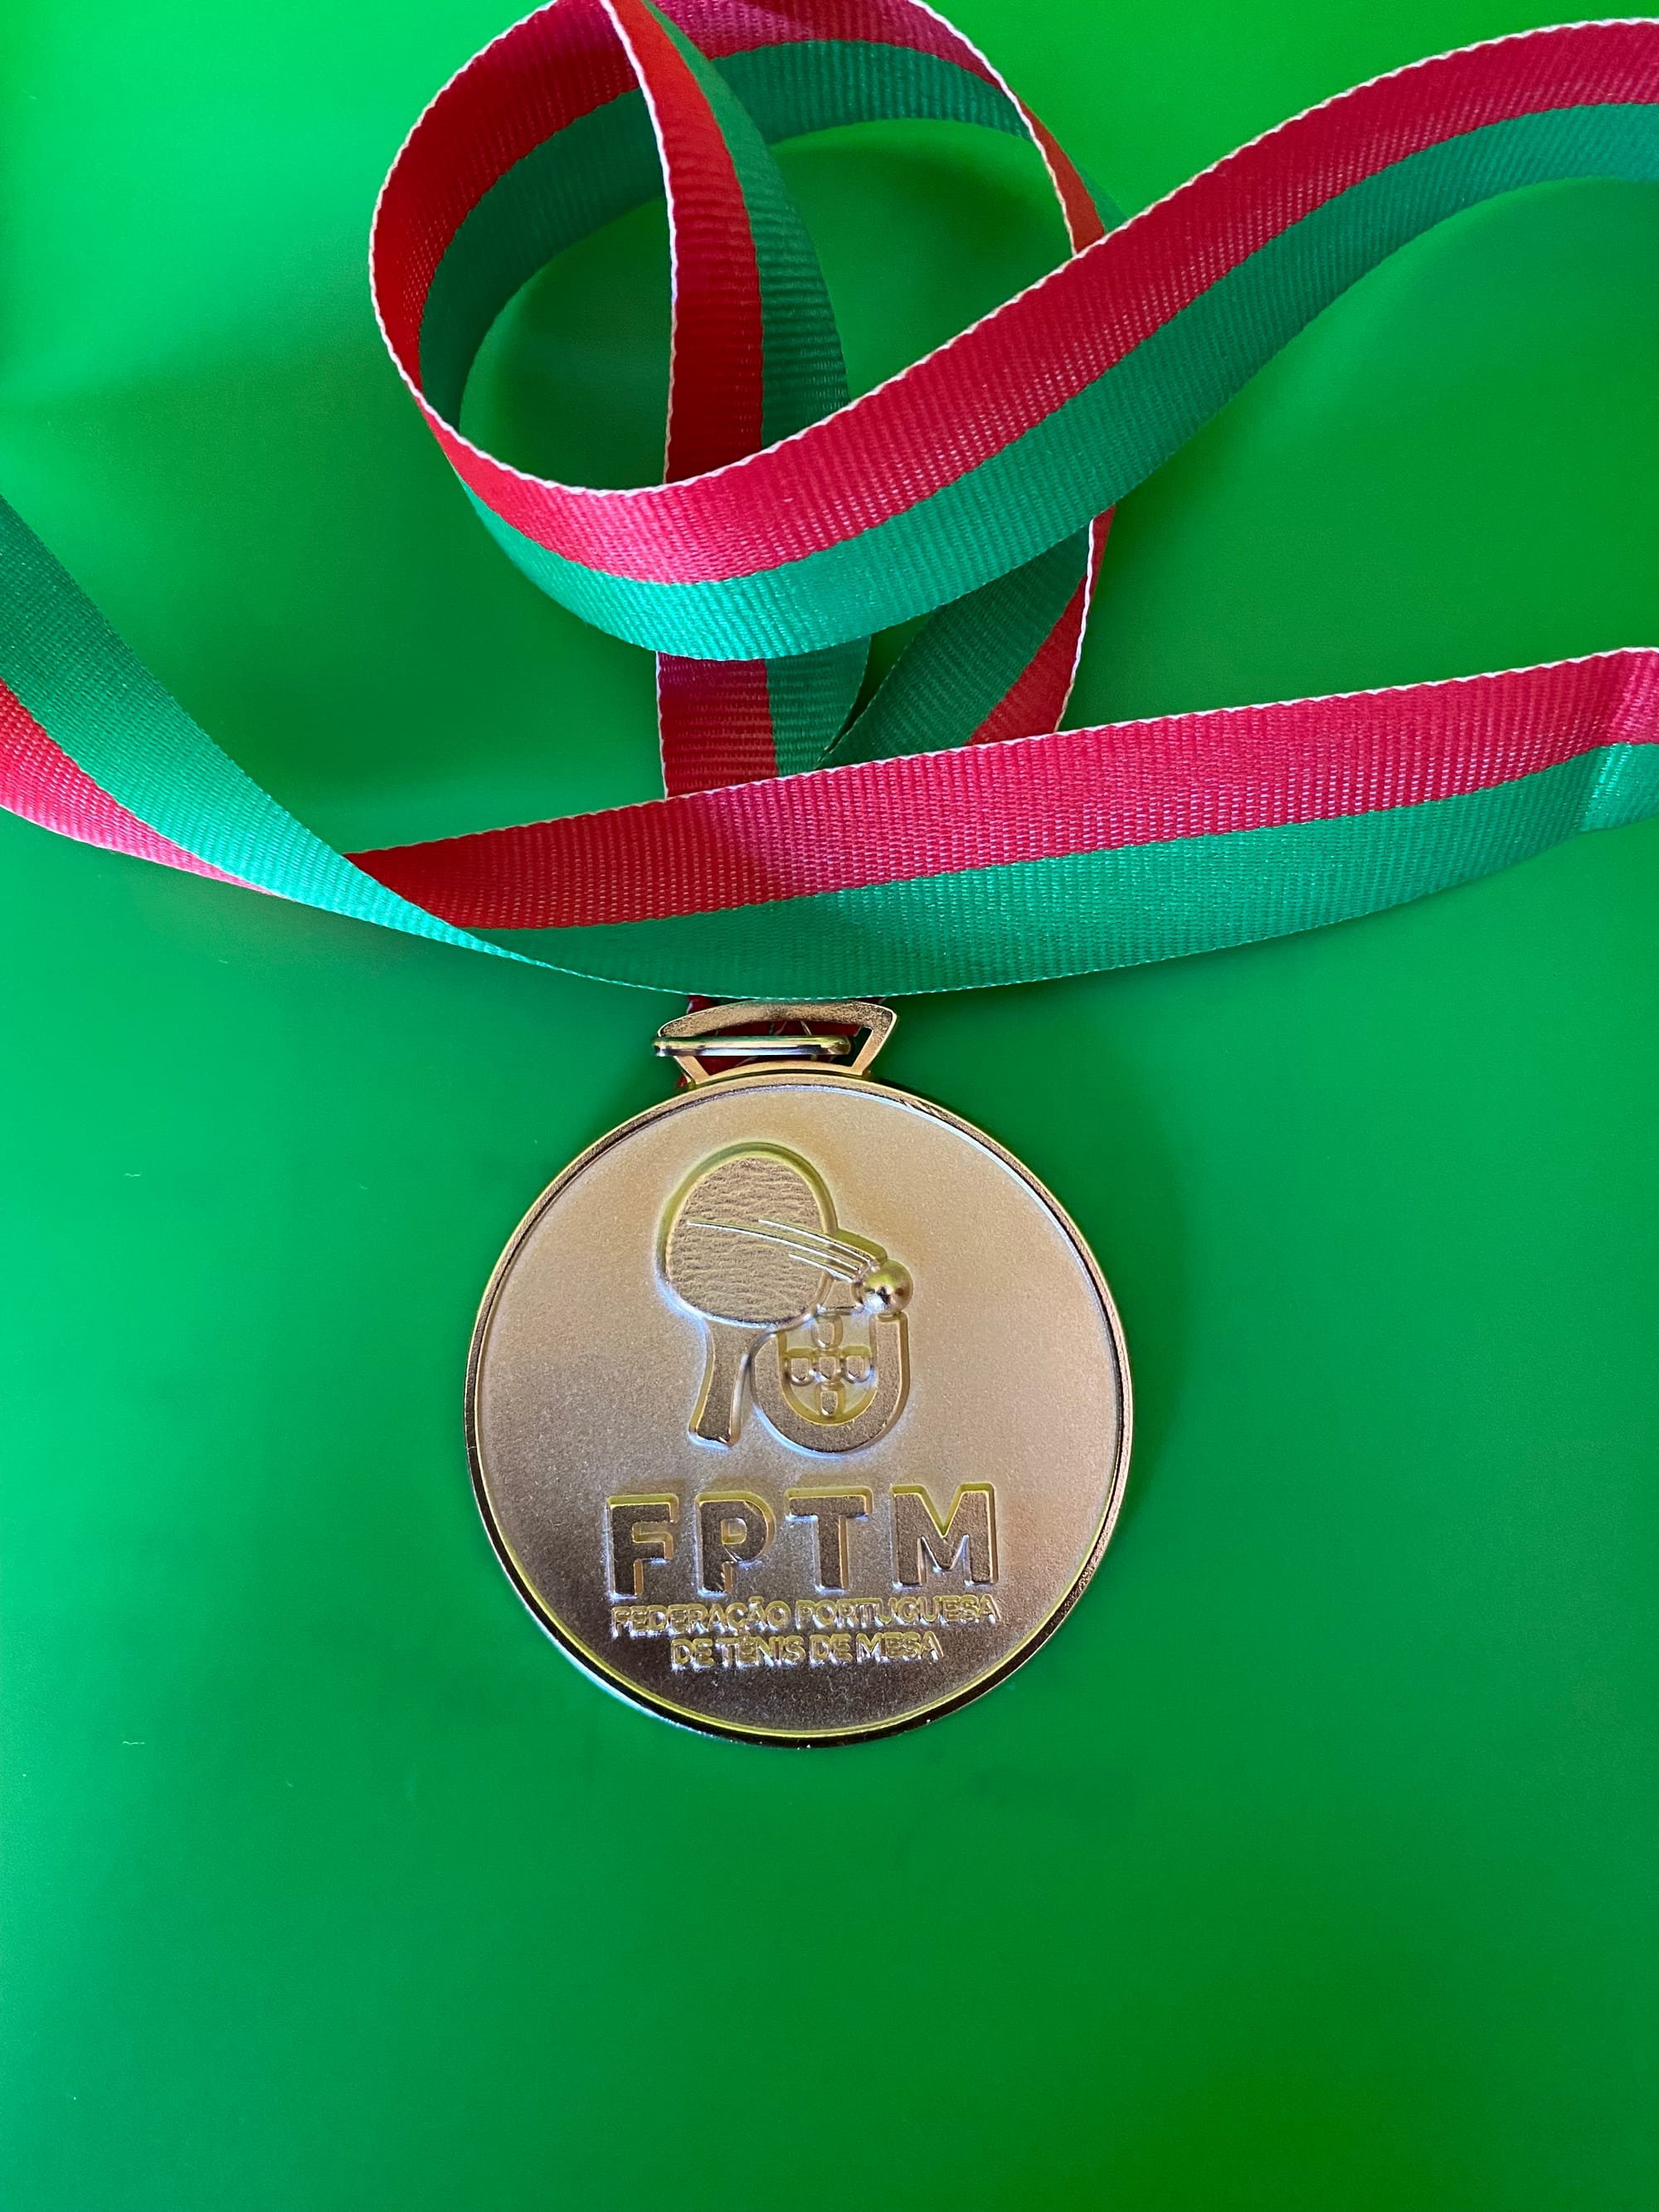 X Torneio Internacional de Ténis de Mesa de Condeixa-a-Nova em abril - FPTM